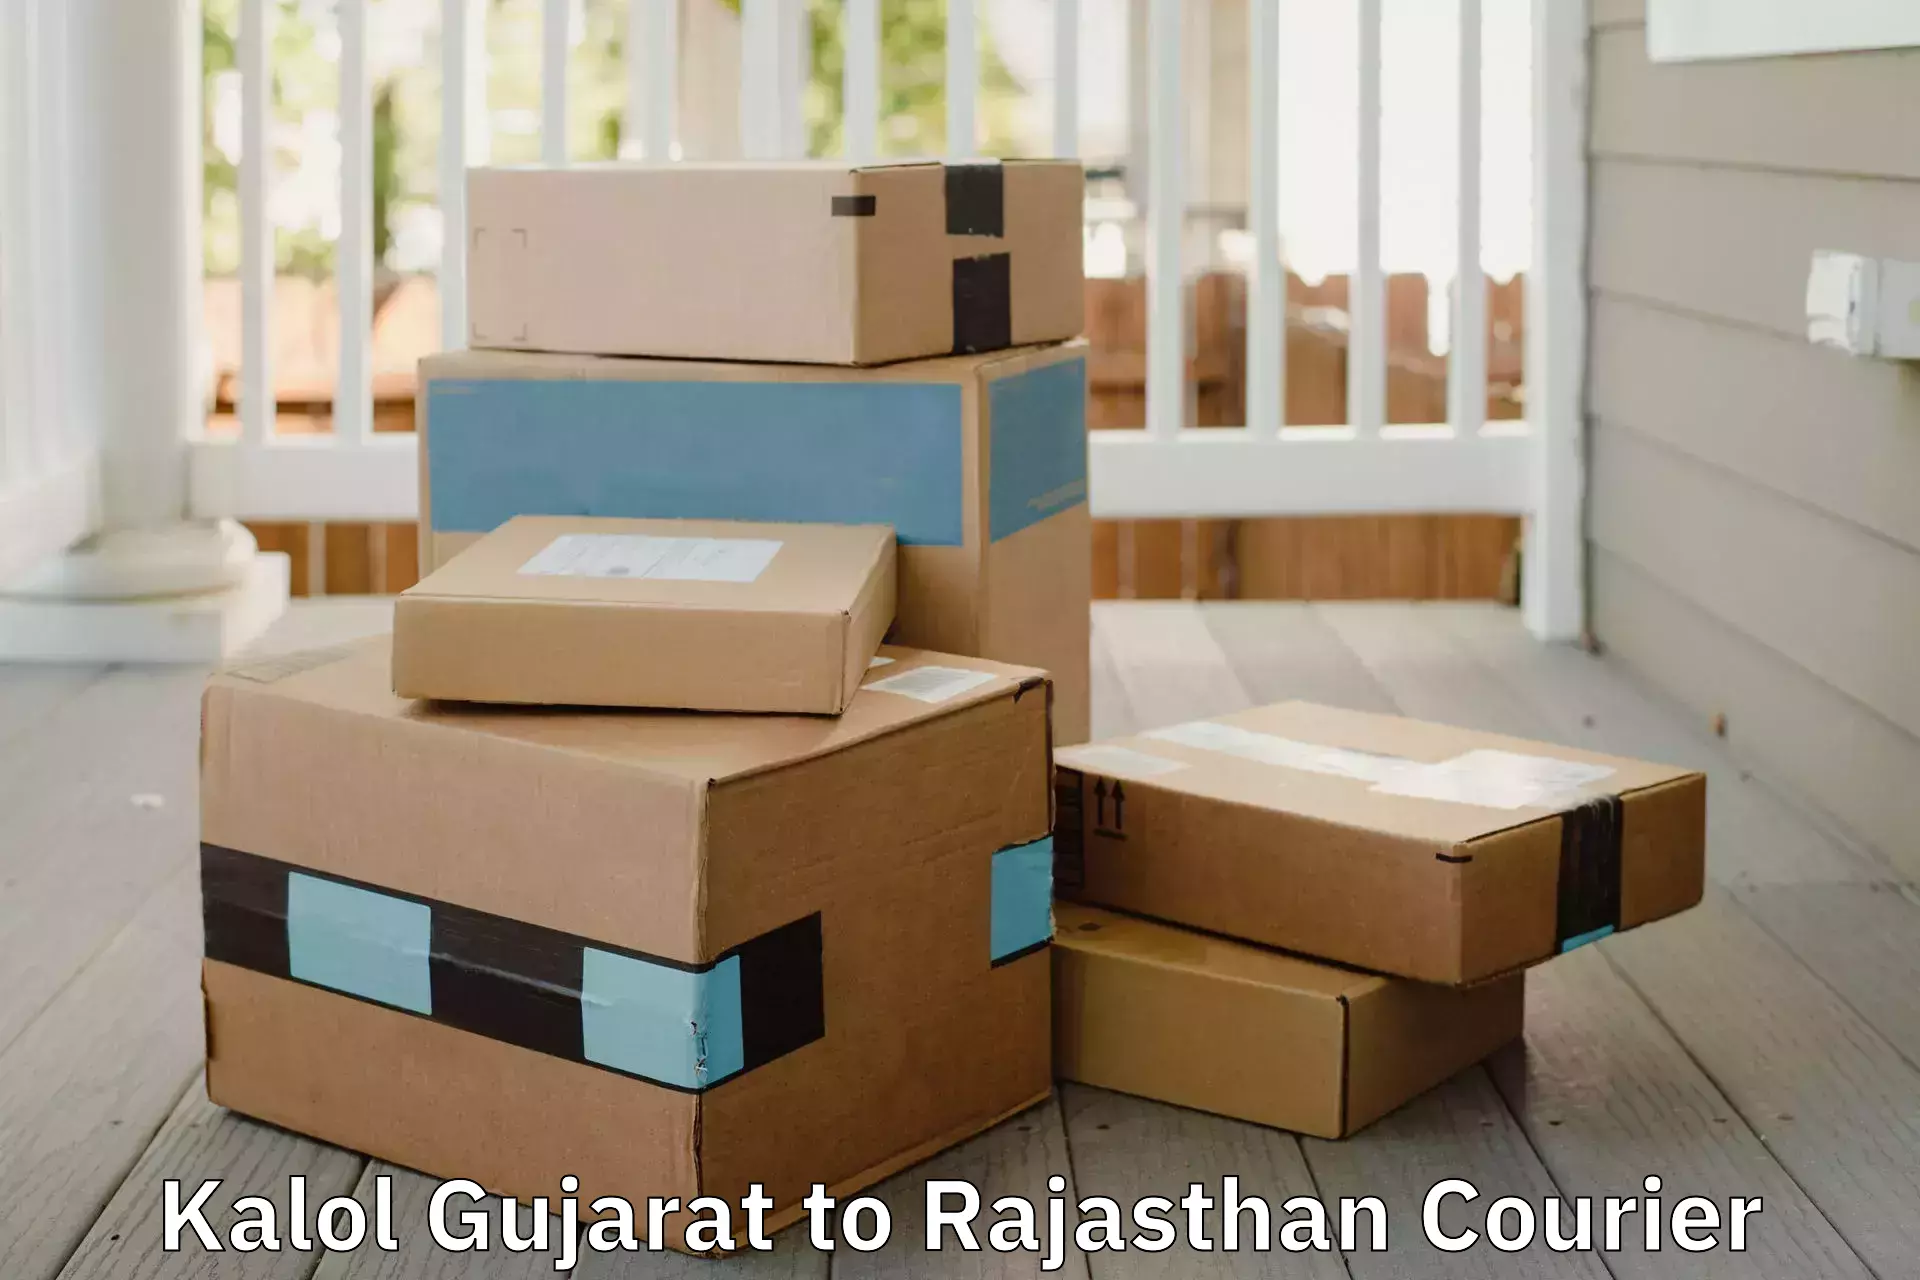 Premium moving services Kalol Gujarat to Sri Ganganagar